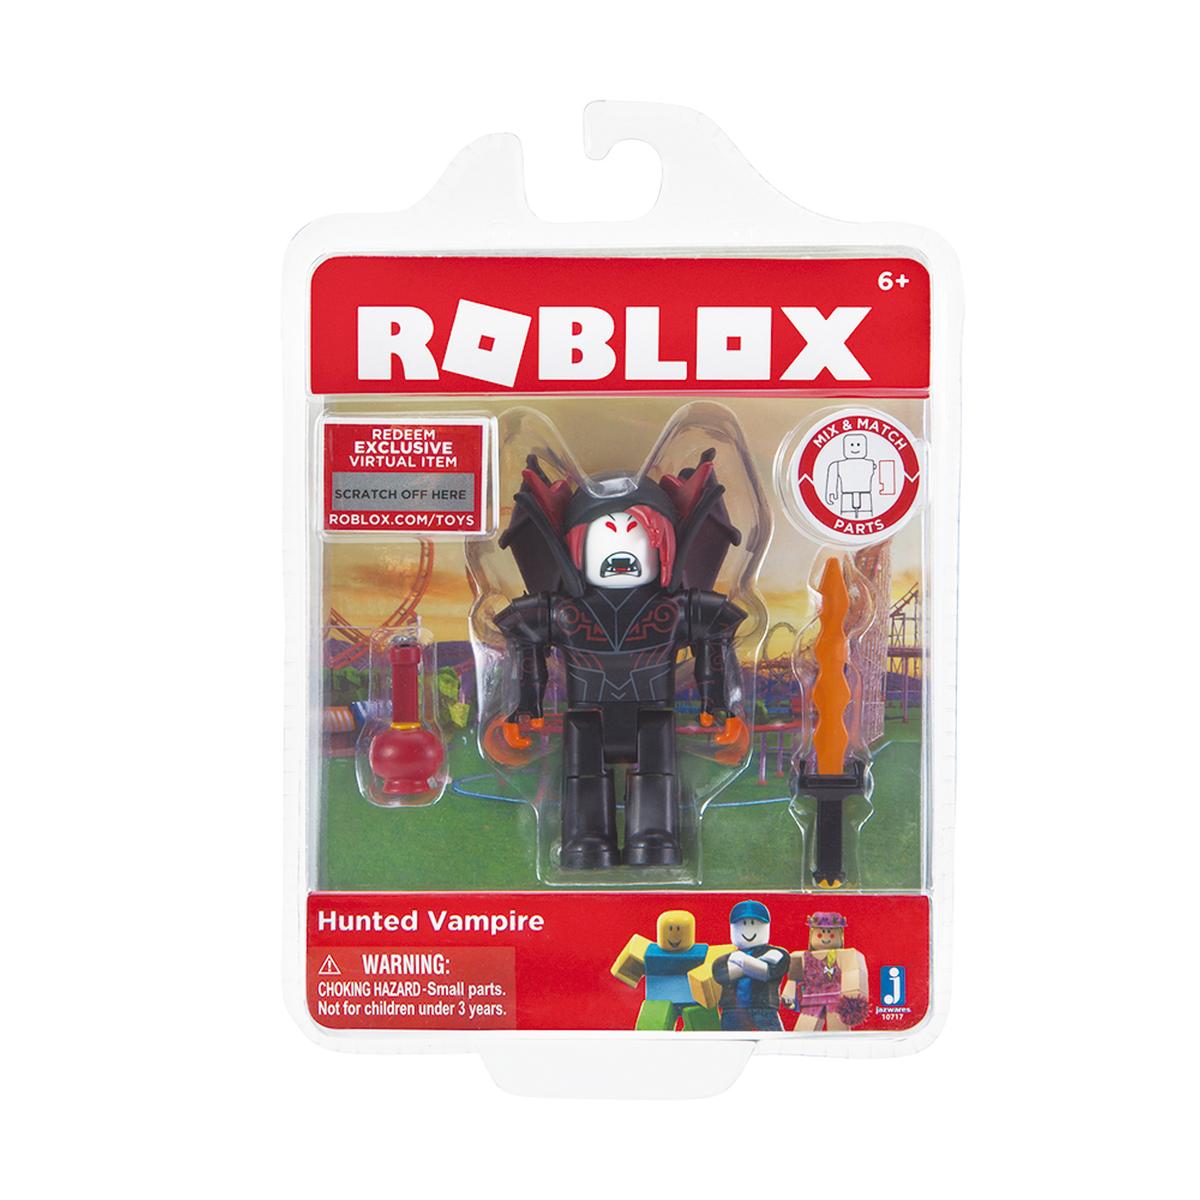 Roblox Hunted Vampire Figura Y Accesorio Videojuegos Merchandise Tienda De Juguetes Y Videojuegos Jugueteria Online Toysrus - juguetes de roblox con codigos